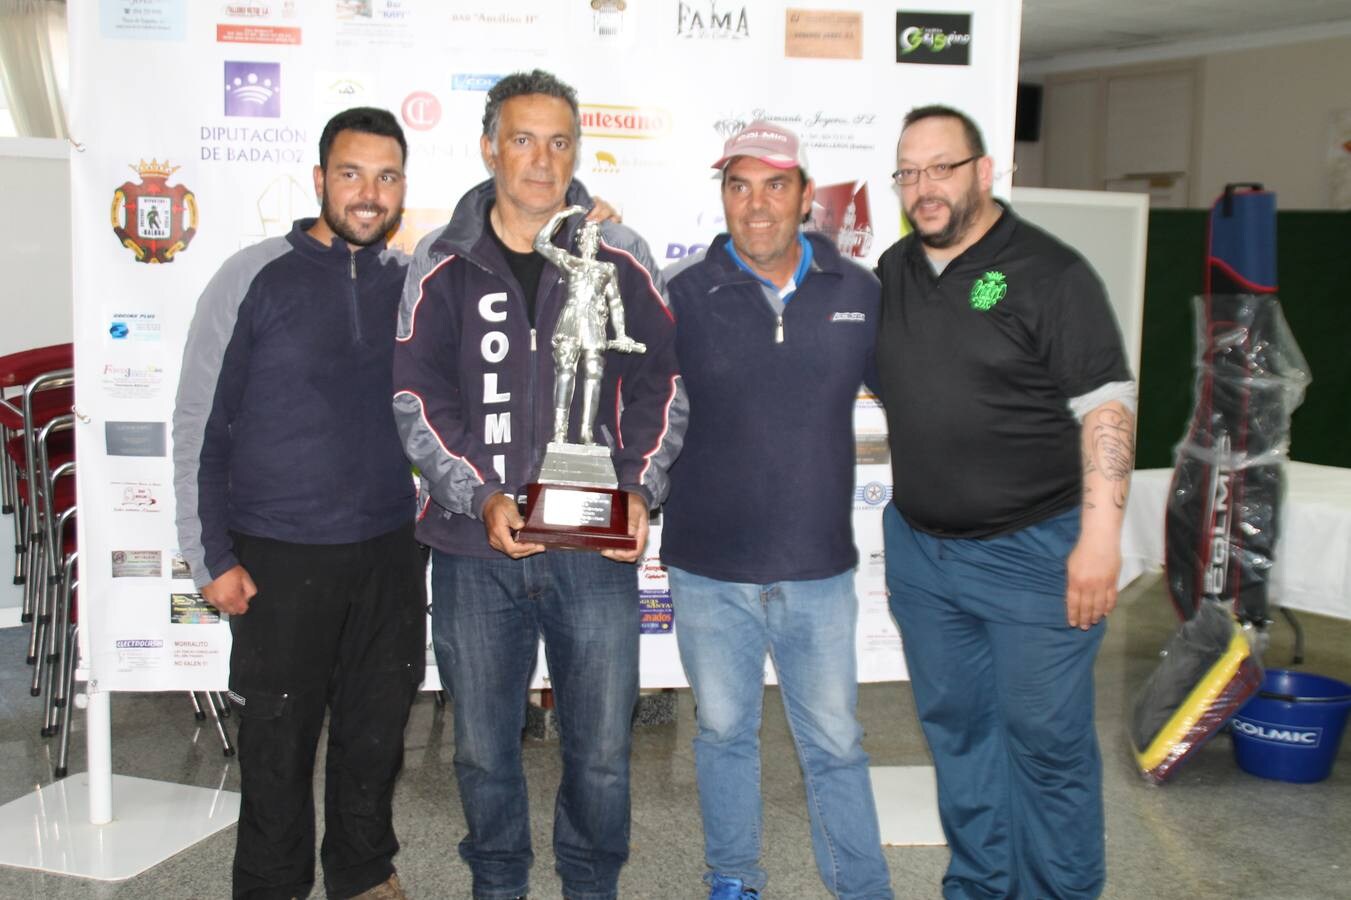 Componentes del equipo de la Agrupación de Pescadores de Badajoz, ganador del 48ª Trofeo Conqusitadores.